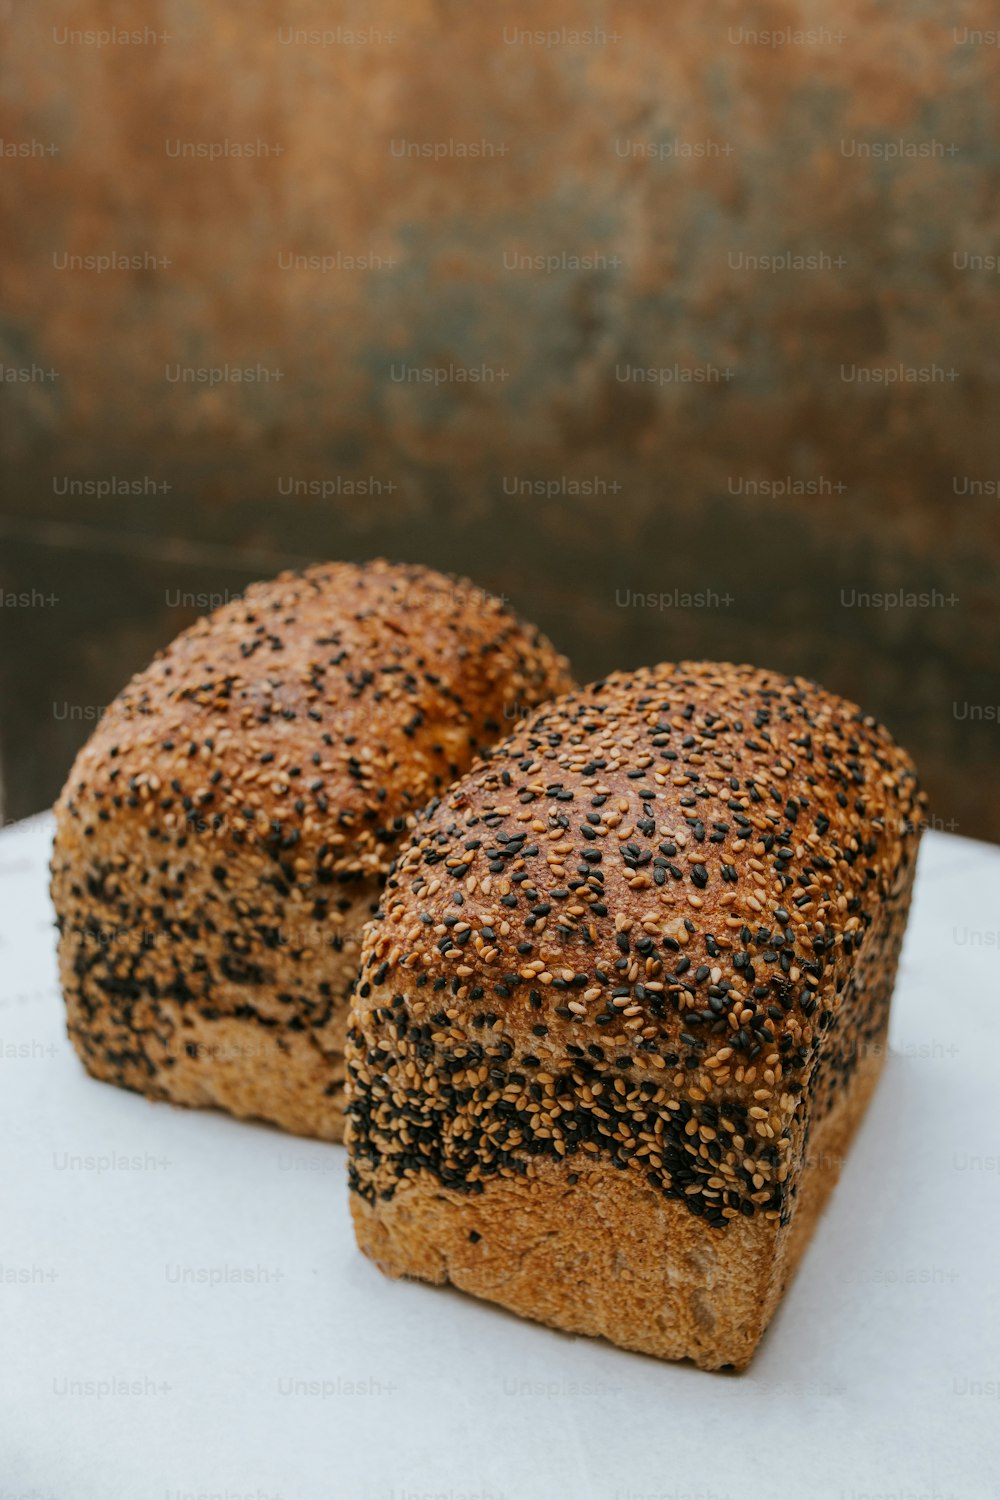 흰 접시 위에 빵 두 조각이 놓여 있다